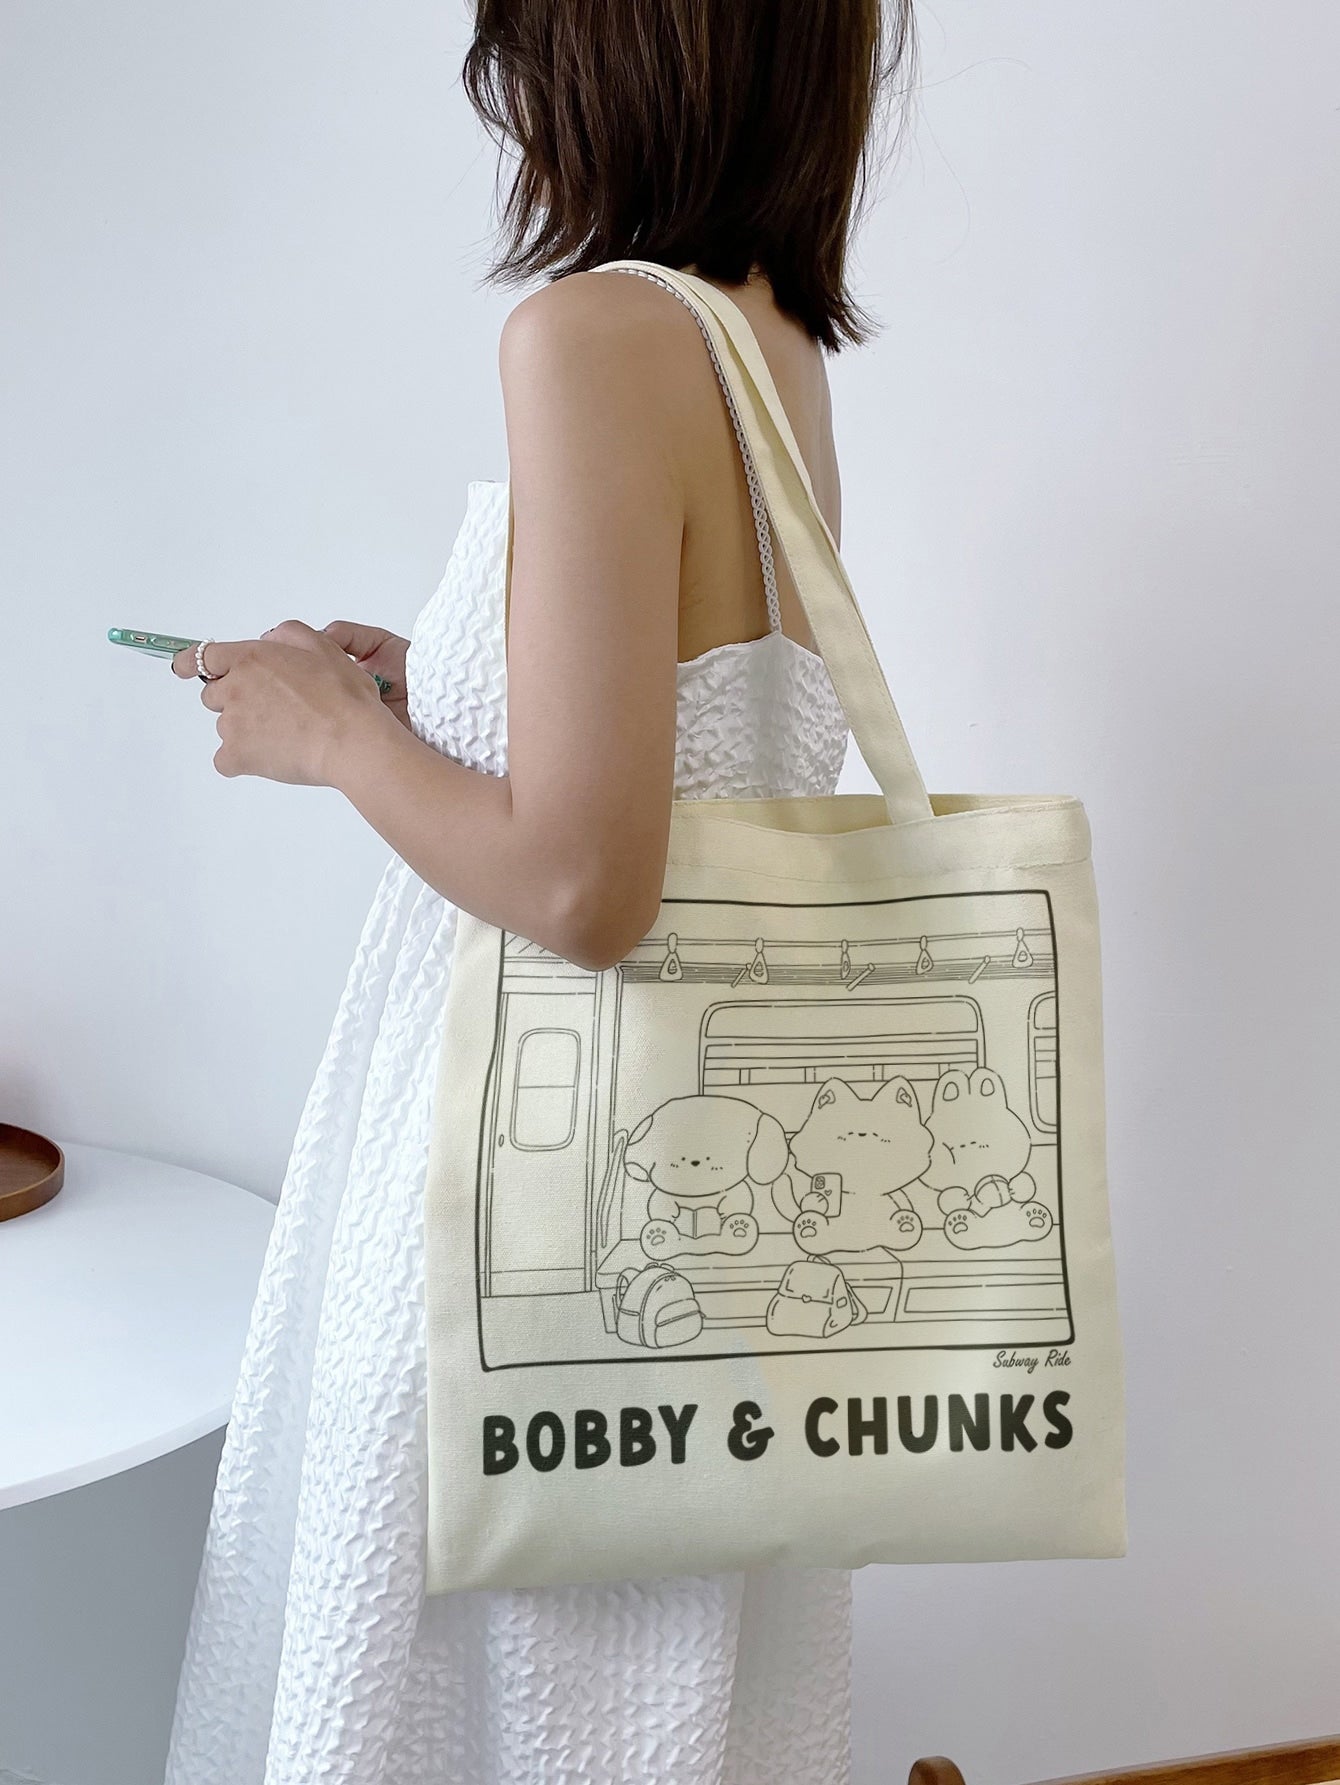 Bobby and Chunks on Tote Bag